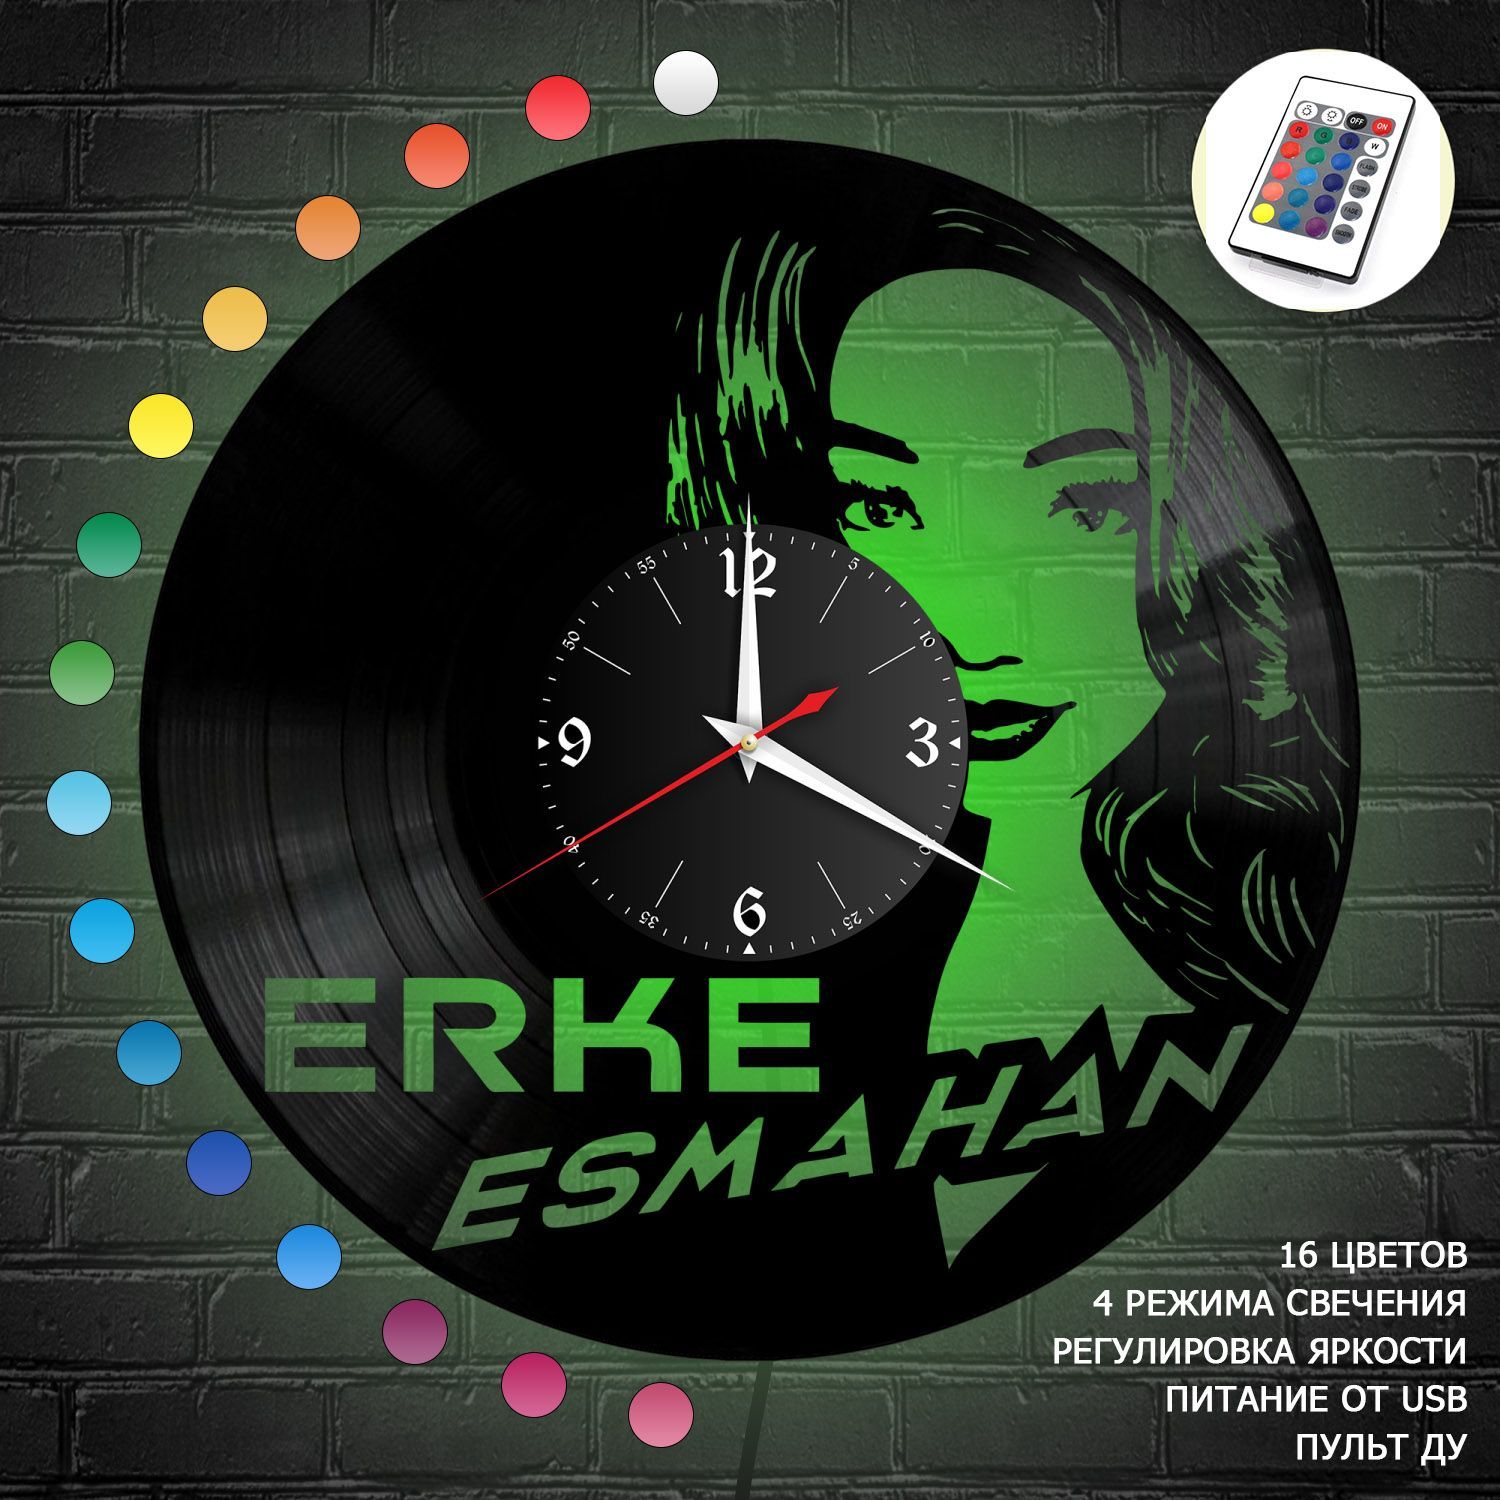 Часы с подсветкой "Ерке Есмахан" из винила, №R1 VC-12124-RGB